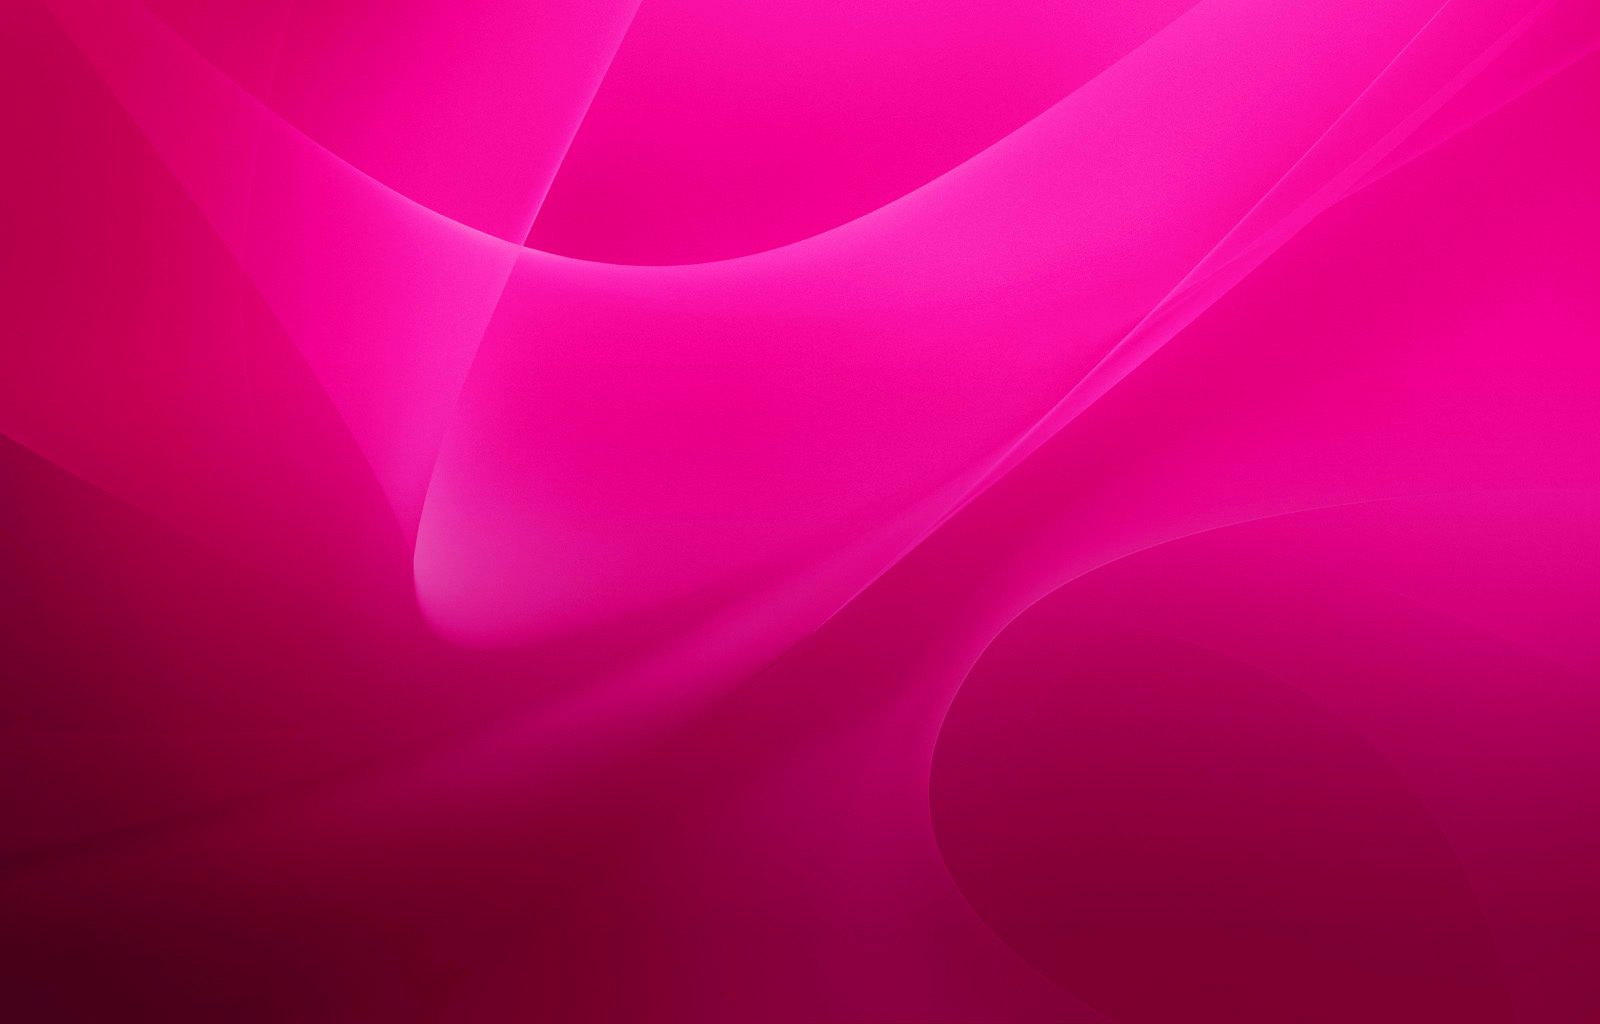 Pink wallpaper là điều hoàn hảo để tạo ra một không gian trang trí tươi sáng và cực kỳ đáng yêu. Với tone màu hồng dịu dàng, hình nền này sẽ tạo ra một không gian nghỉ ngơi sang trọng và thiết thực.